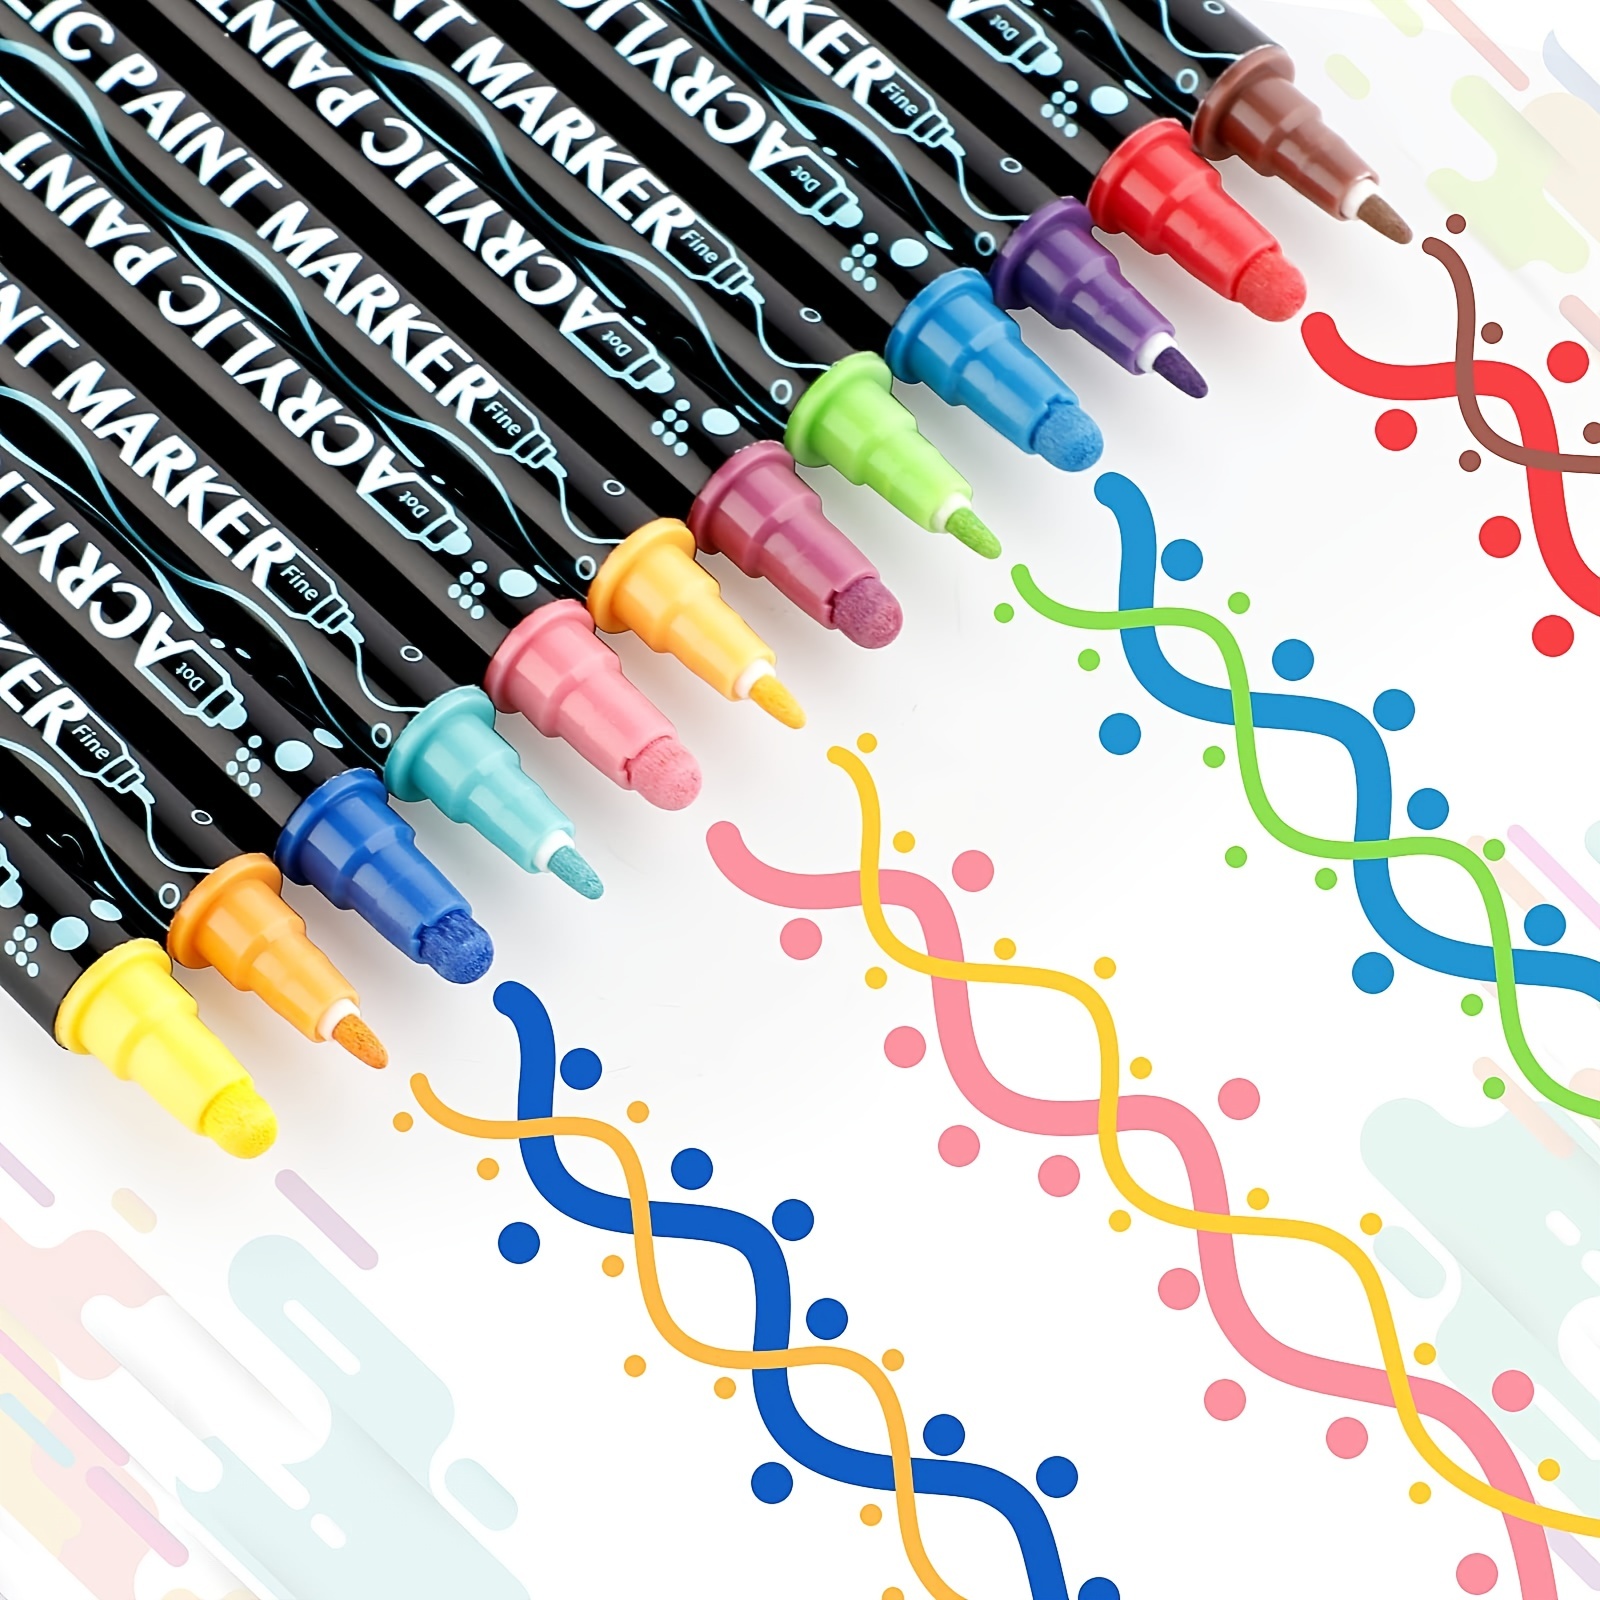 18× Acrylic Paint Pens Set Double Head Premium Markers Fine Tip DIY Art  Project